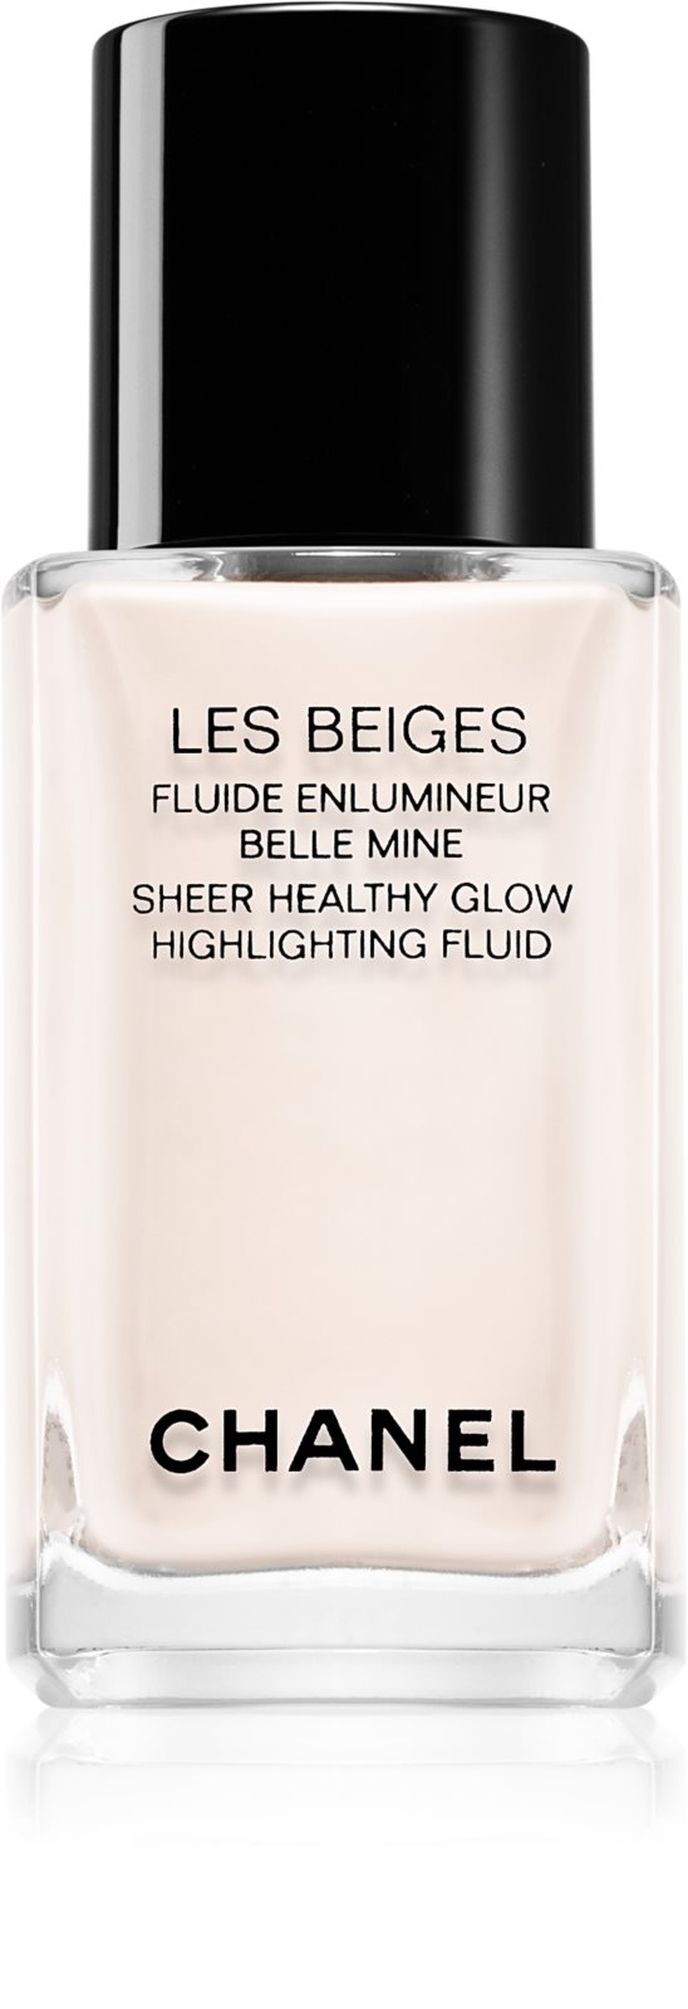 Tekutý rozjasňovač Les Beiges Sheer Healthy Glow, Chanel, 1659 Kč, notino.cz